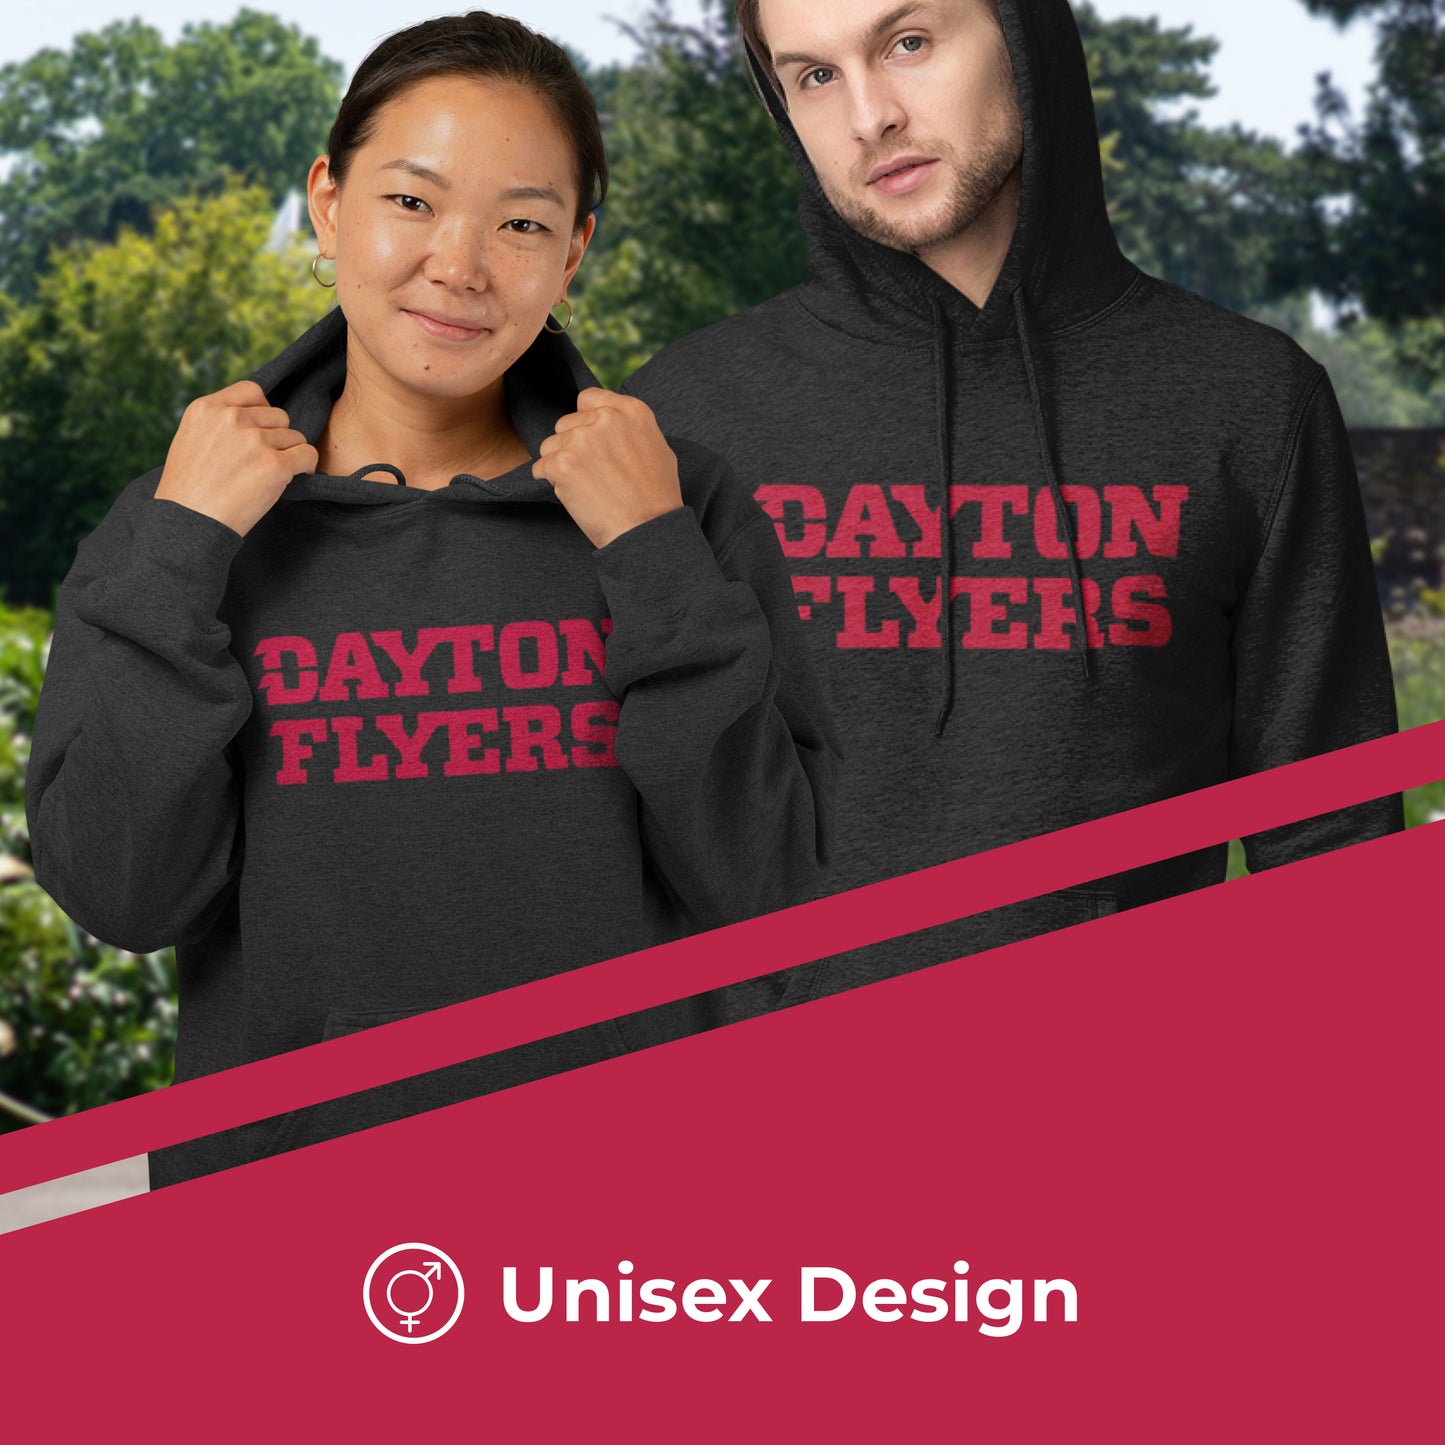 Dayton Flyers NCAA Adult Cotton Blend Charcoal Hooded Sweatshirt - Charcoal